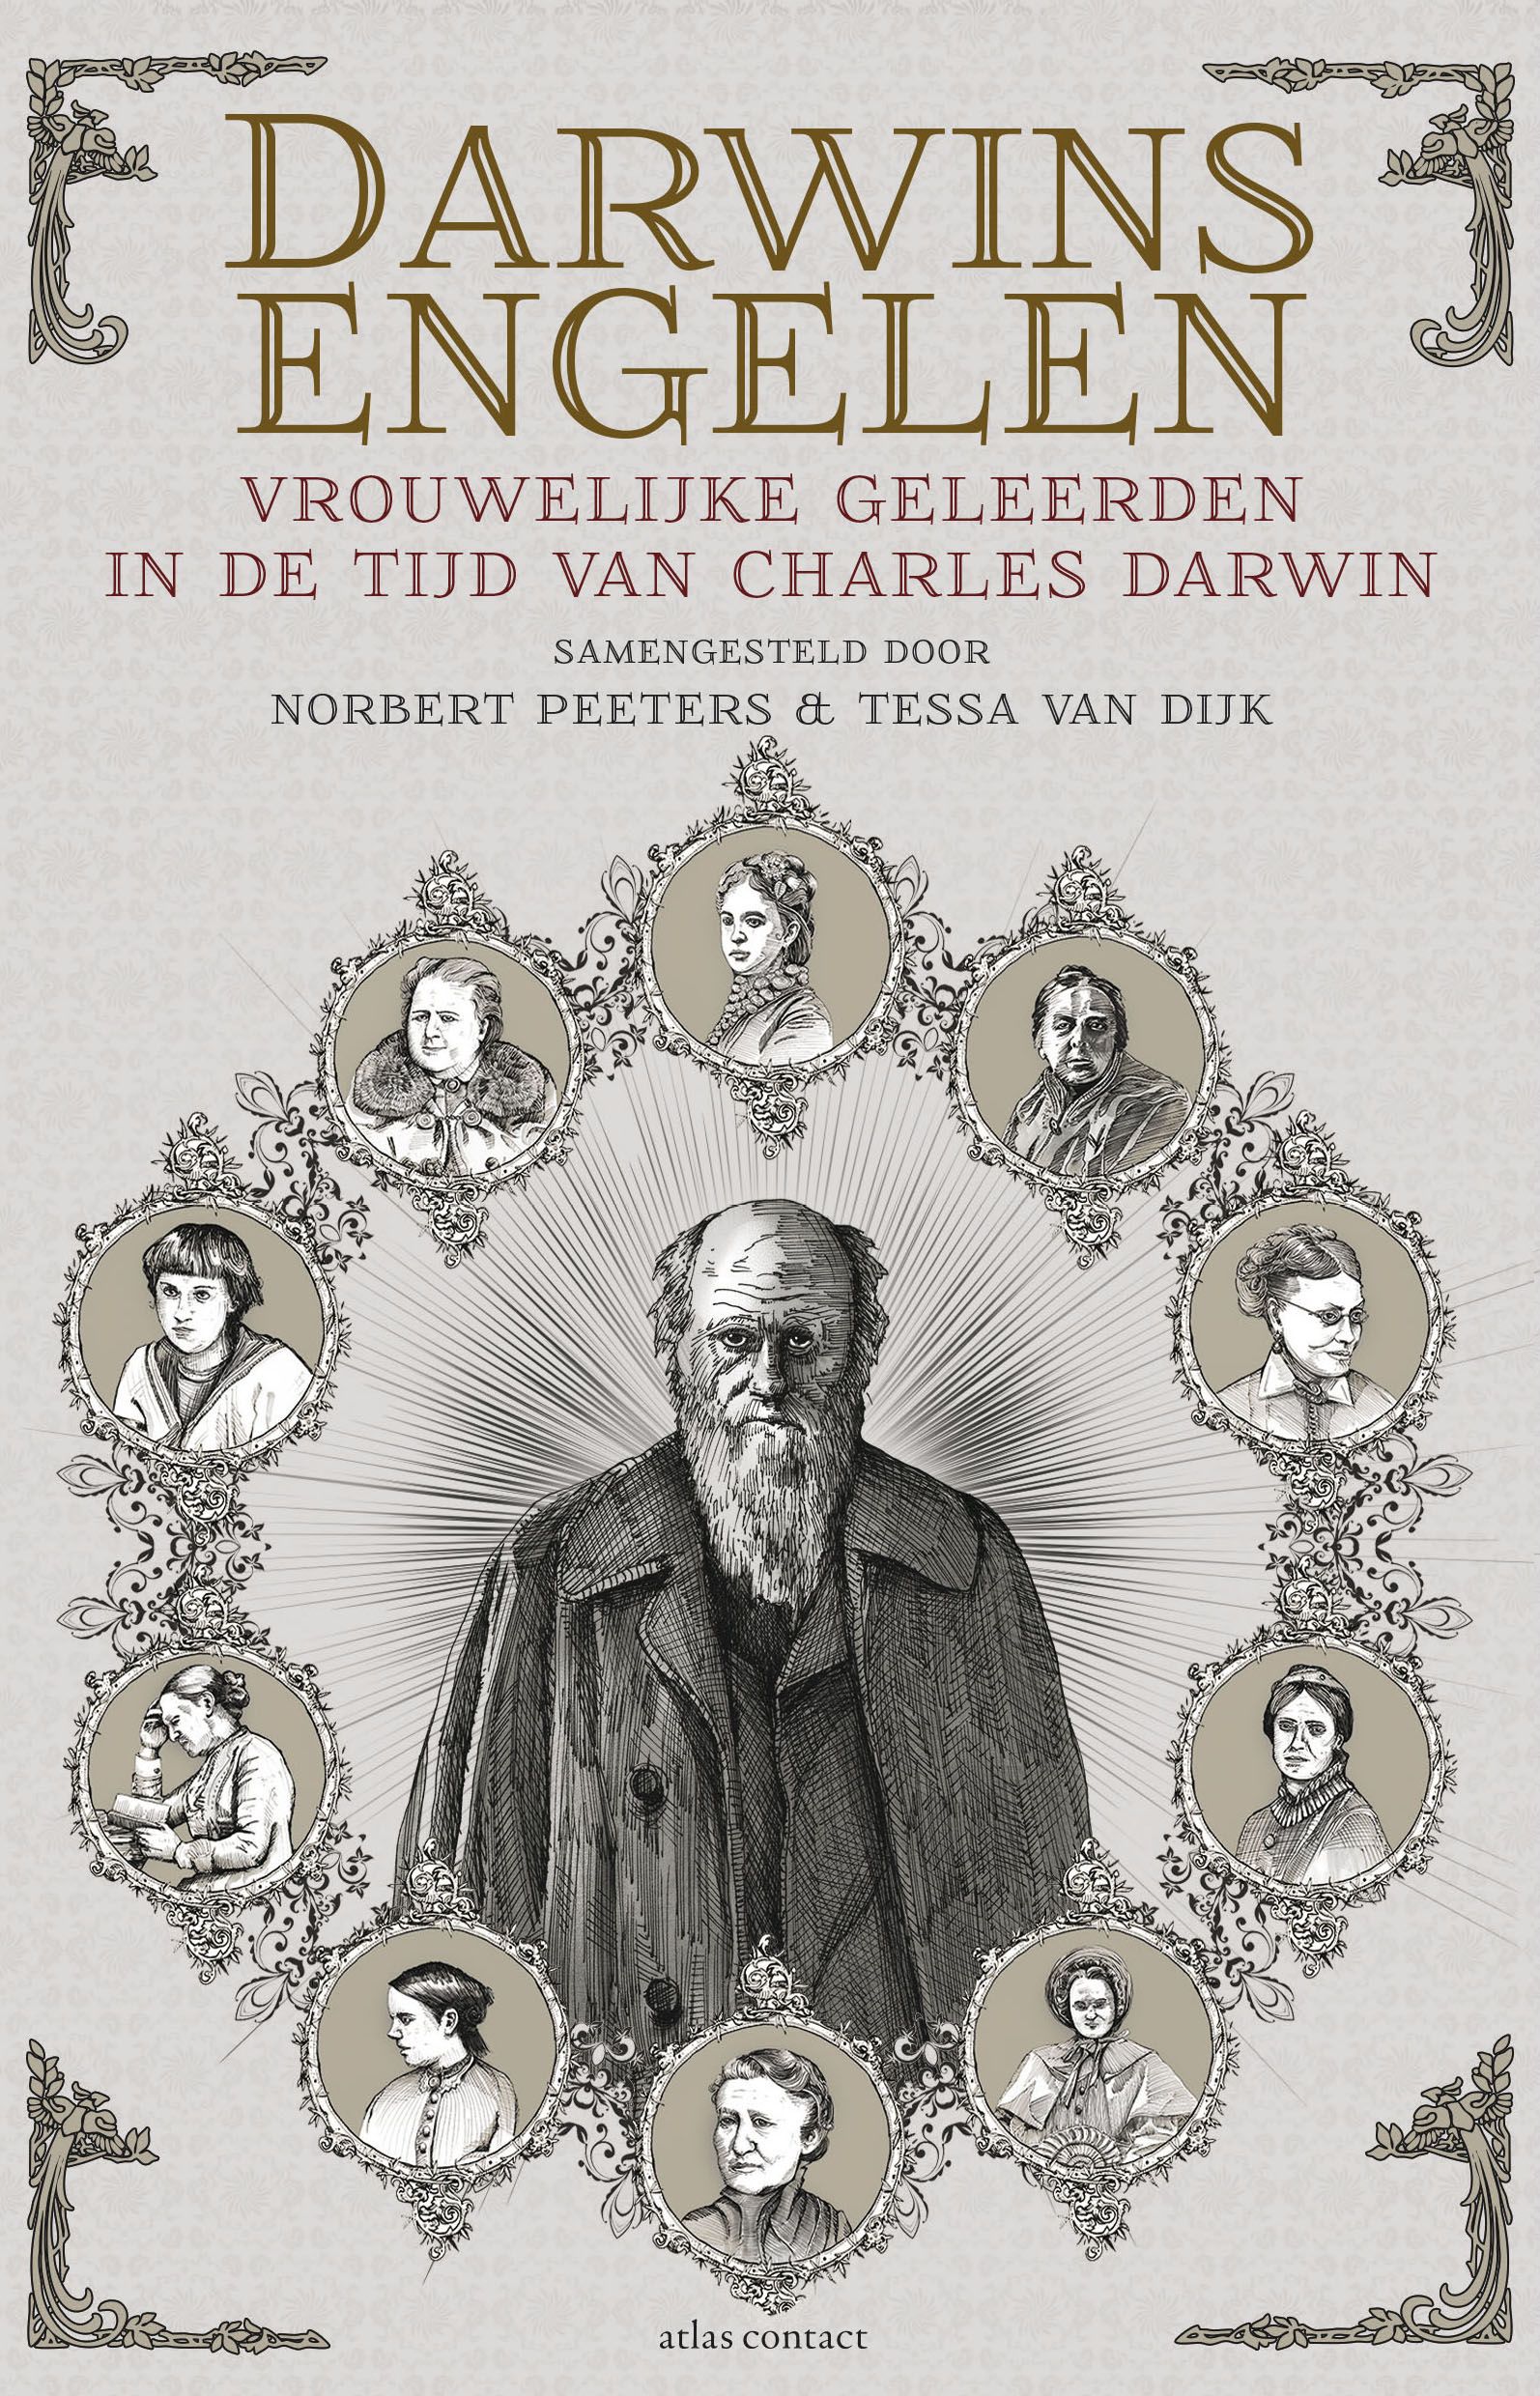 Peeters, Norbert & Dijk, Tessa van - Darwins engelen